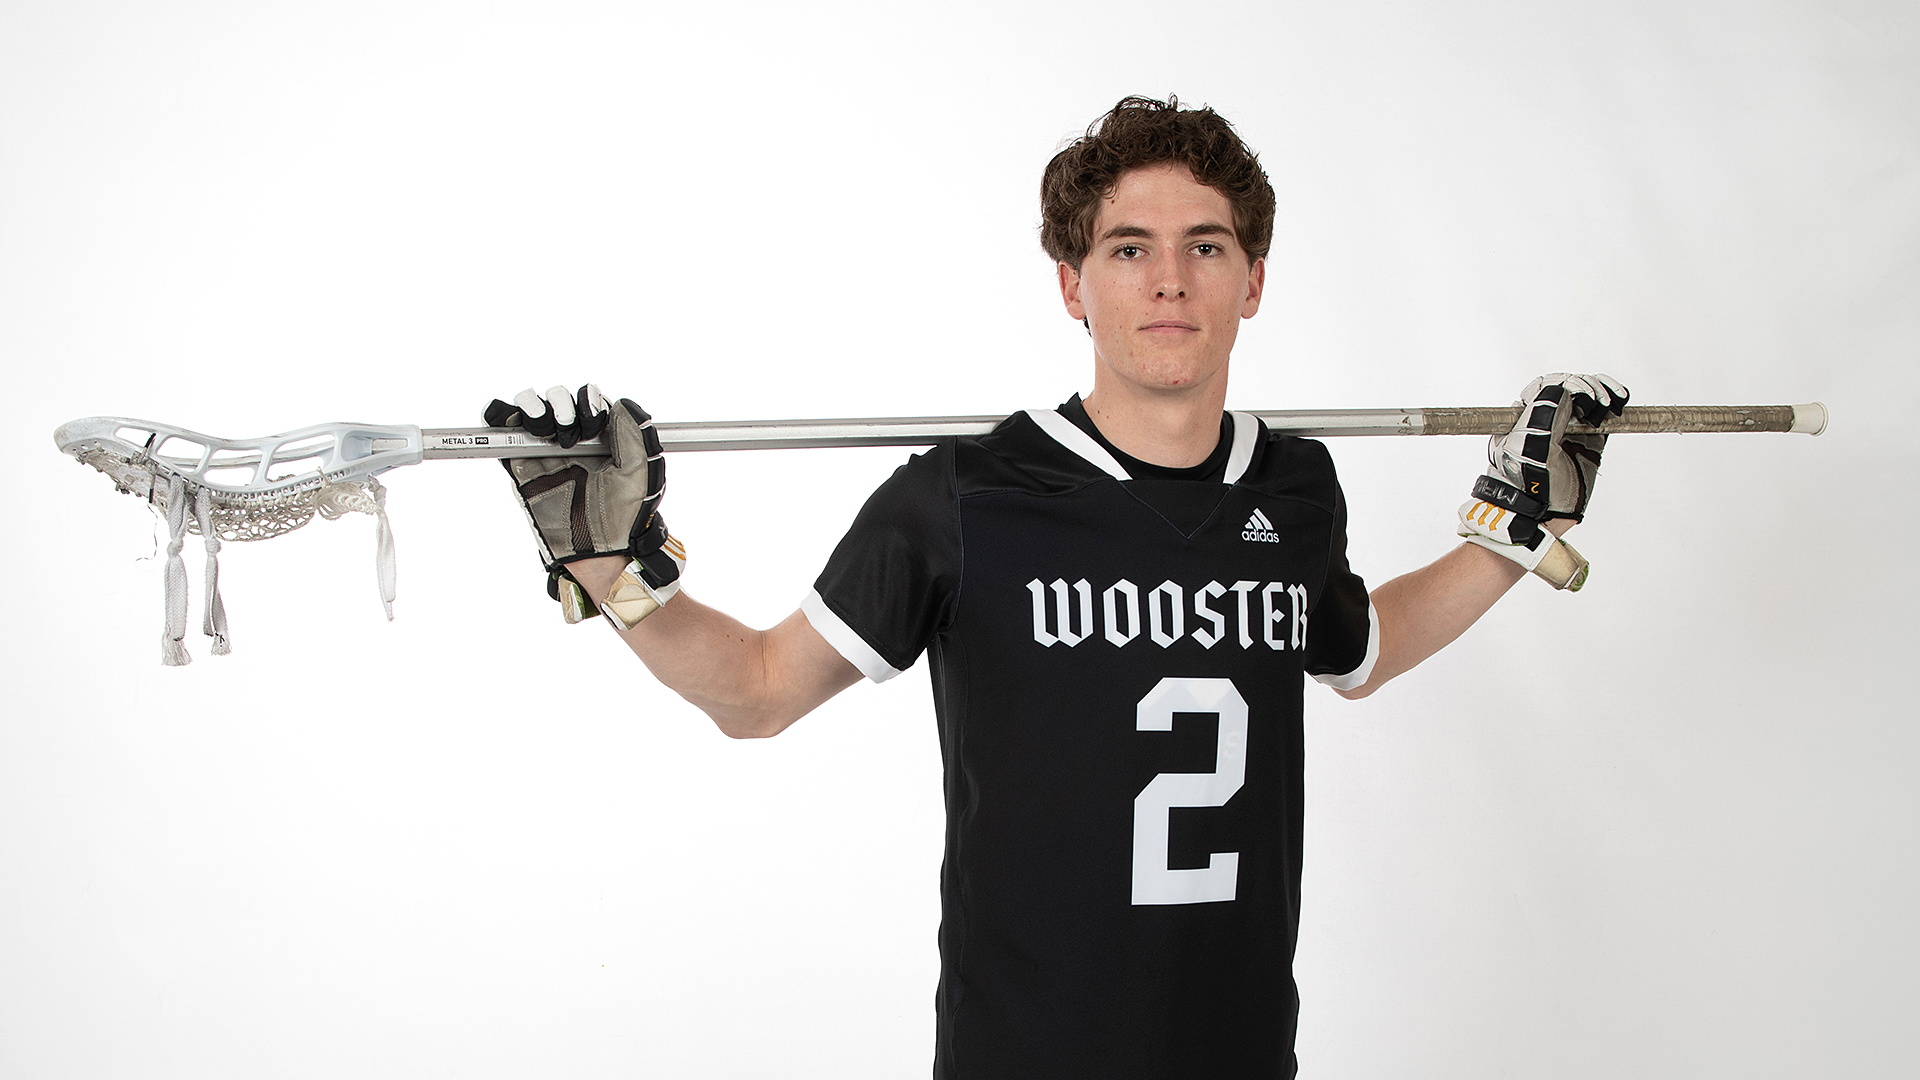 Tucker Joseph, Wooster Lacrosse